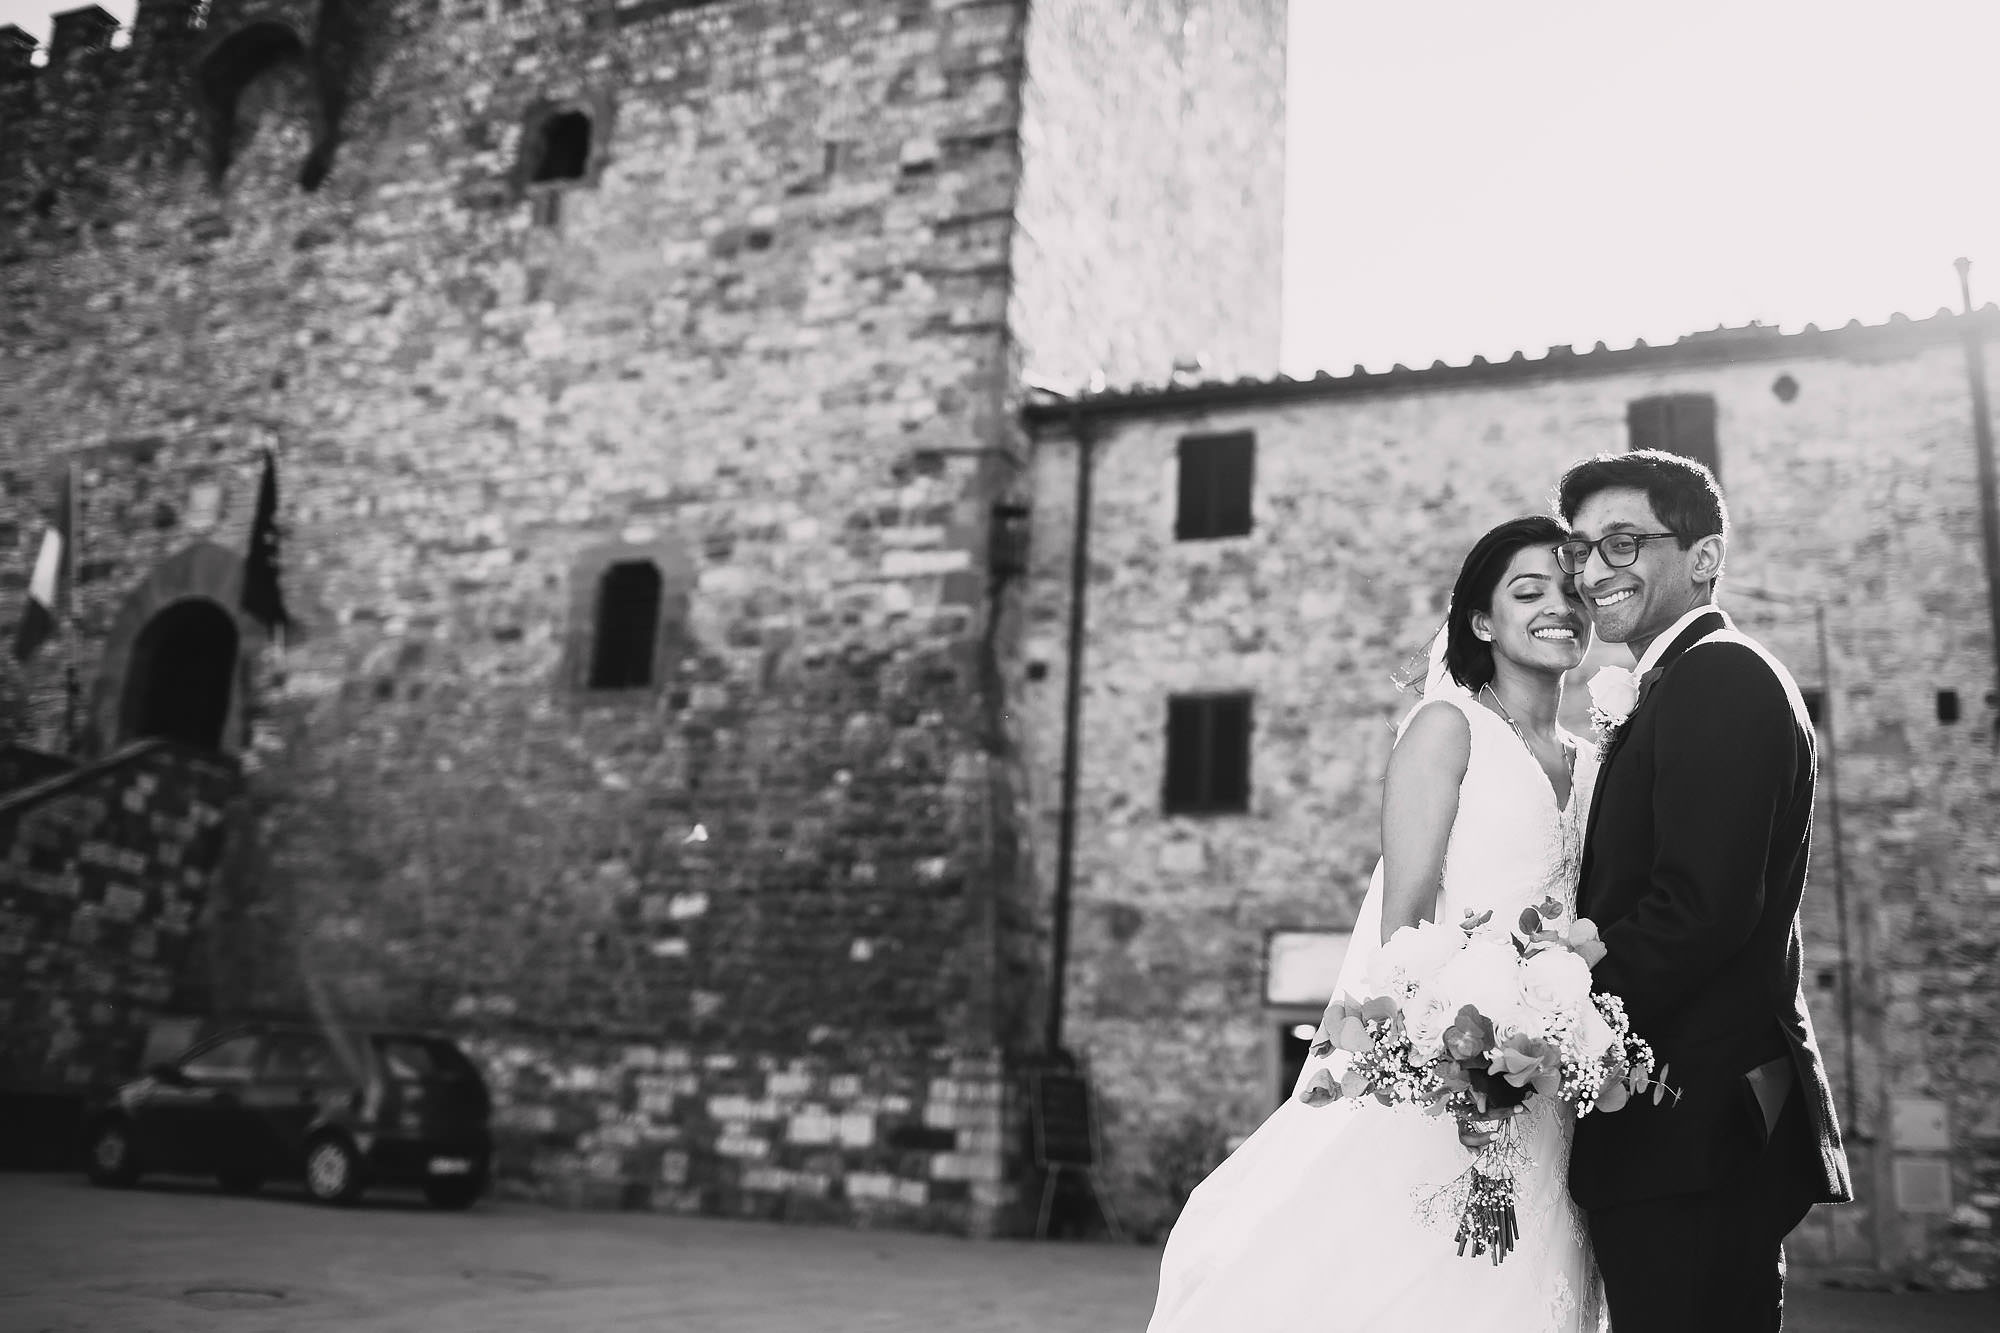 Le filigare wedding photography tuscany